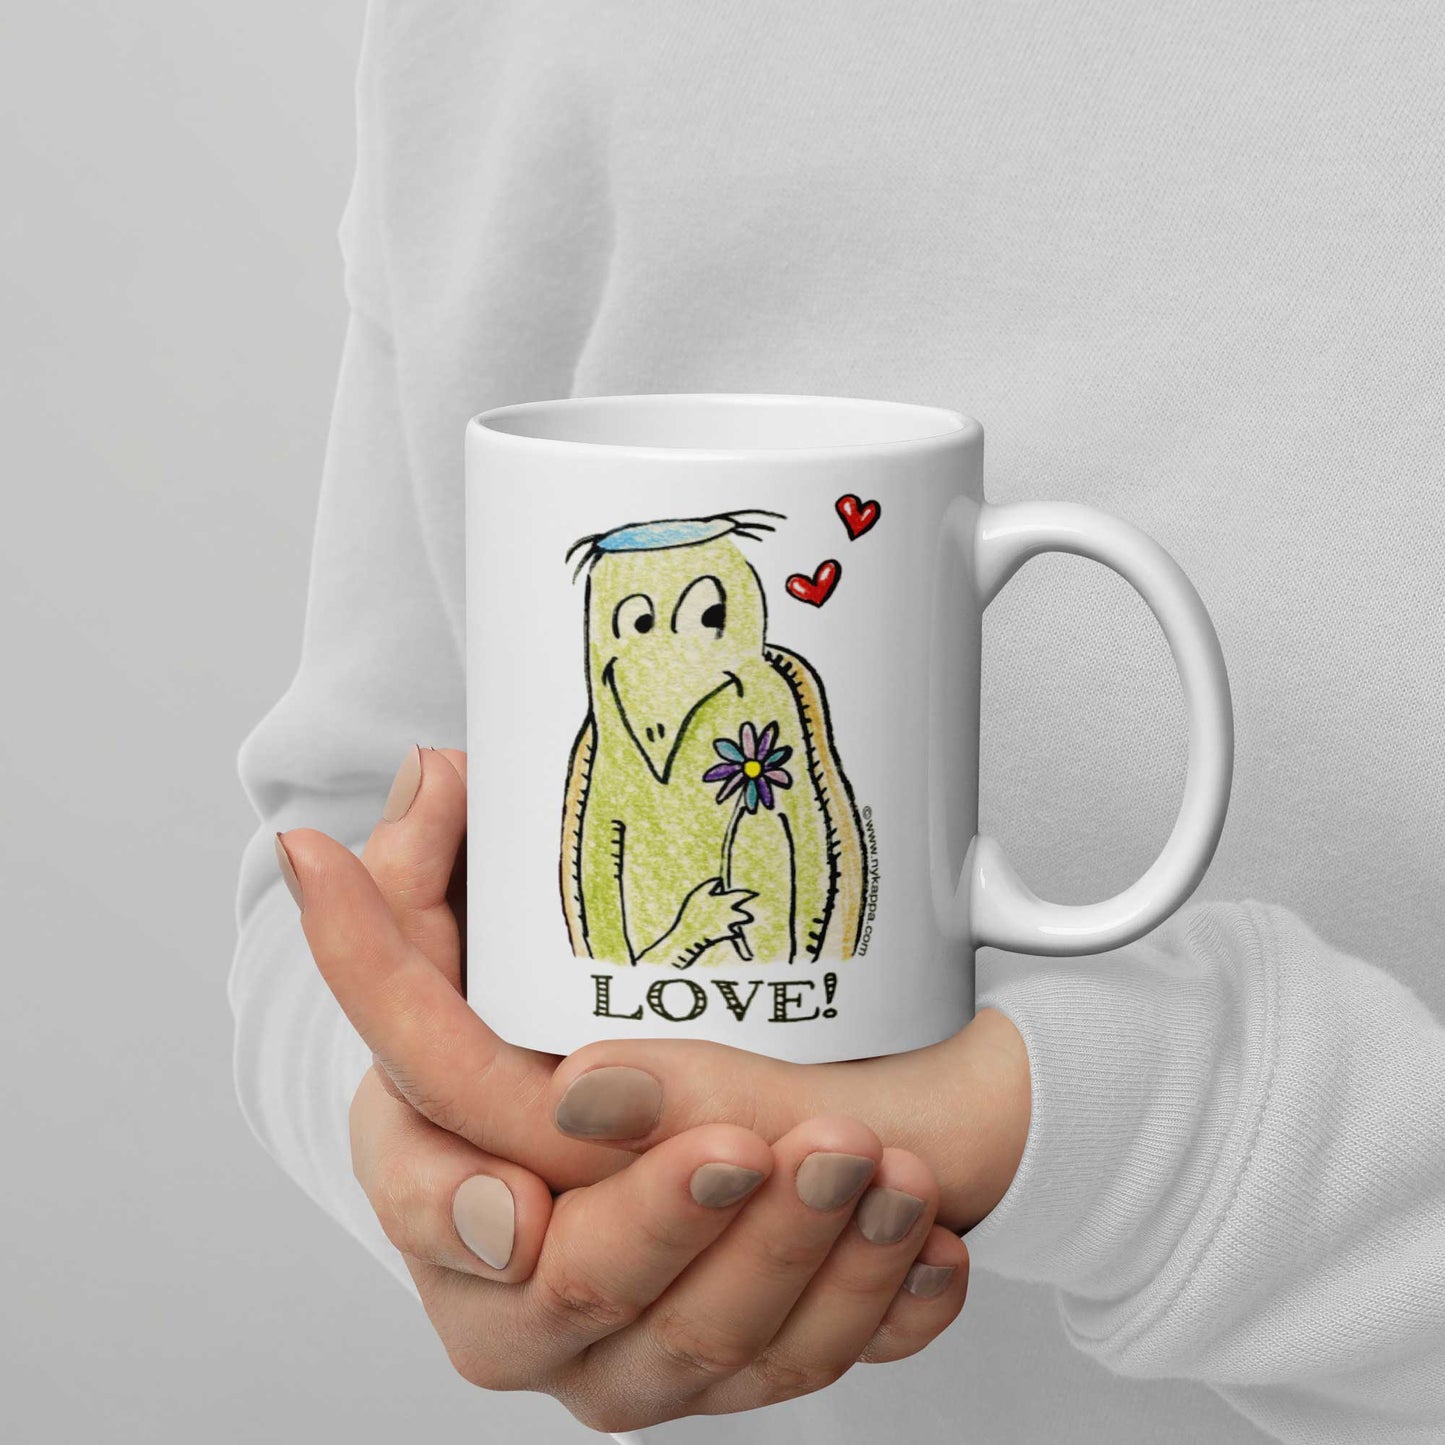 かわいいな NYのカッパ "LOVE!" NYの河童 かっぱ コーヒー マグカップ NY Kappa Love Coffee Mug Cup Handle Right 2